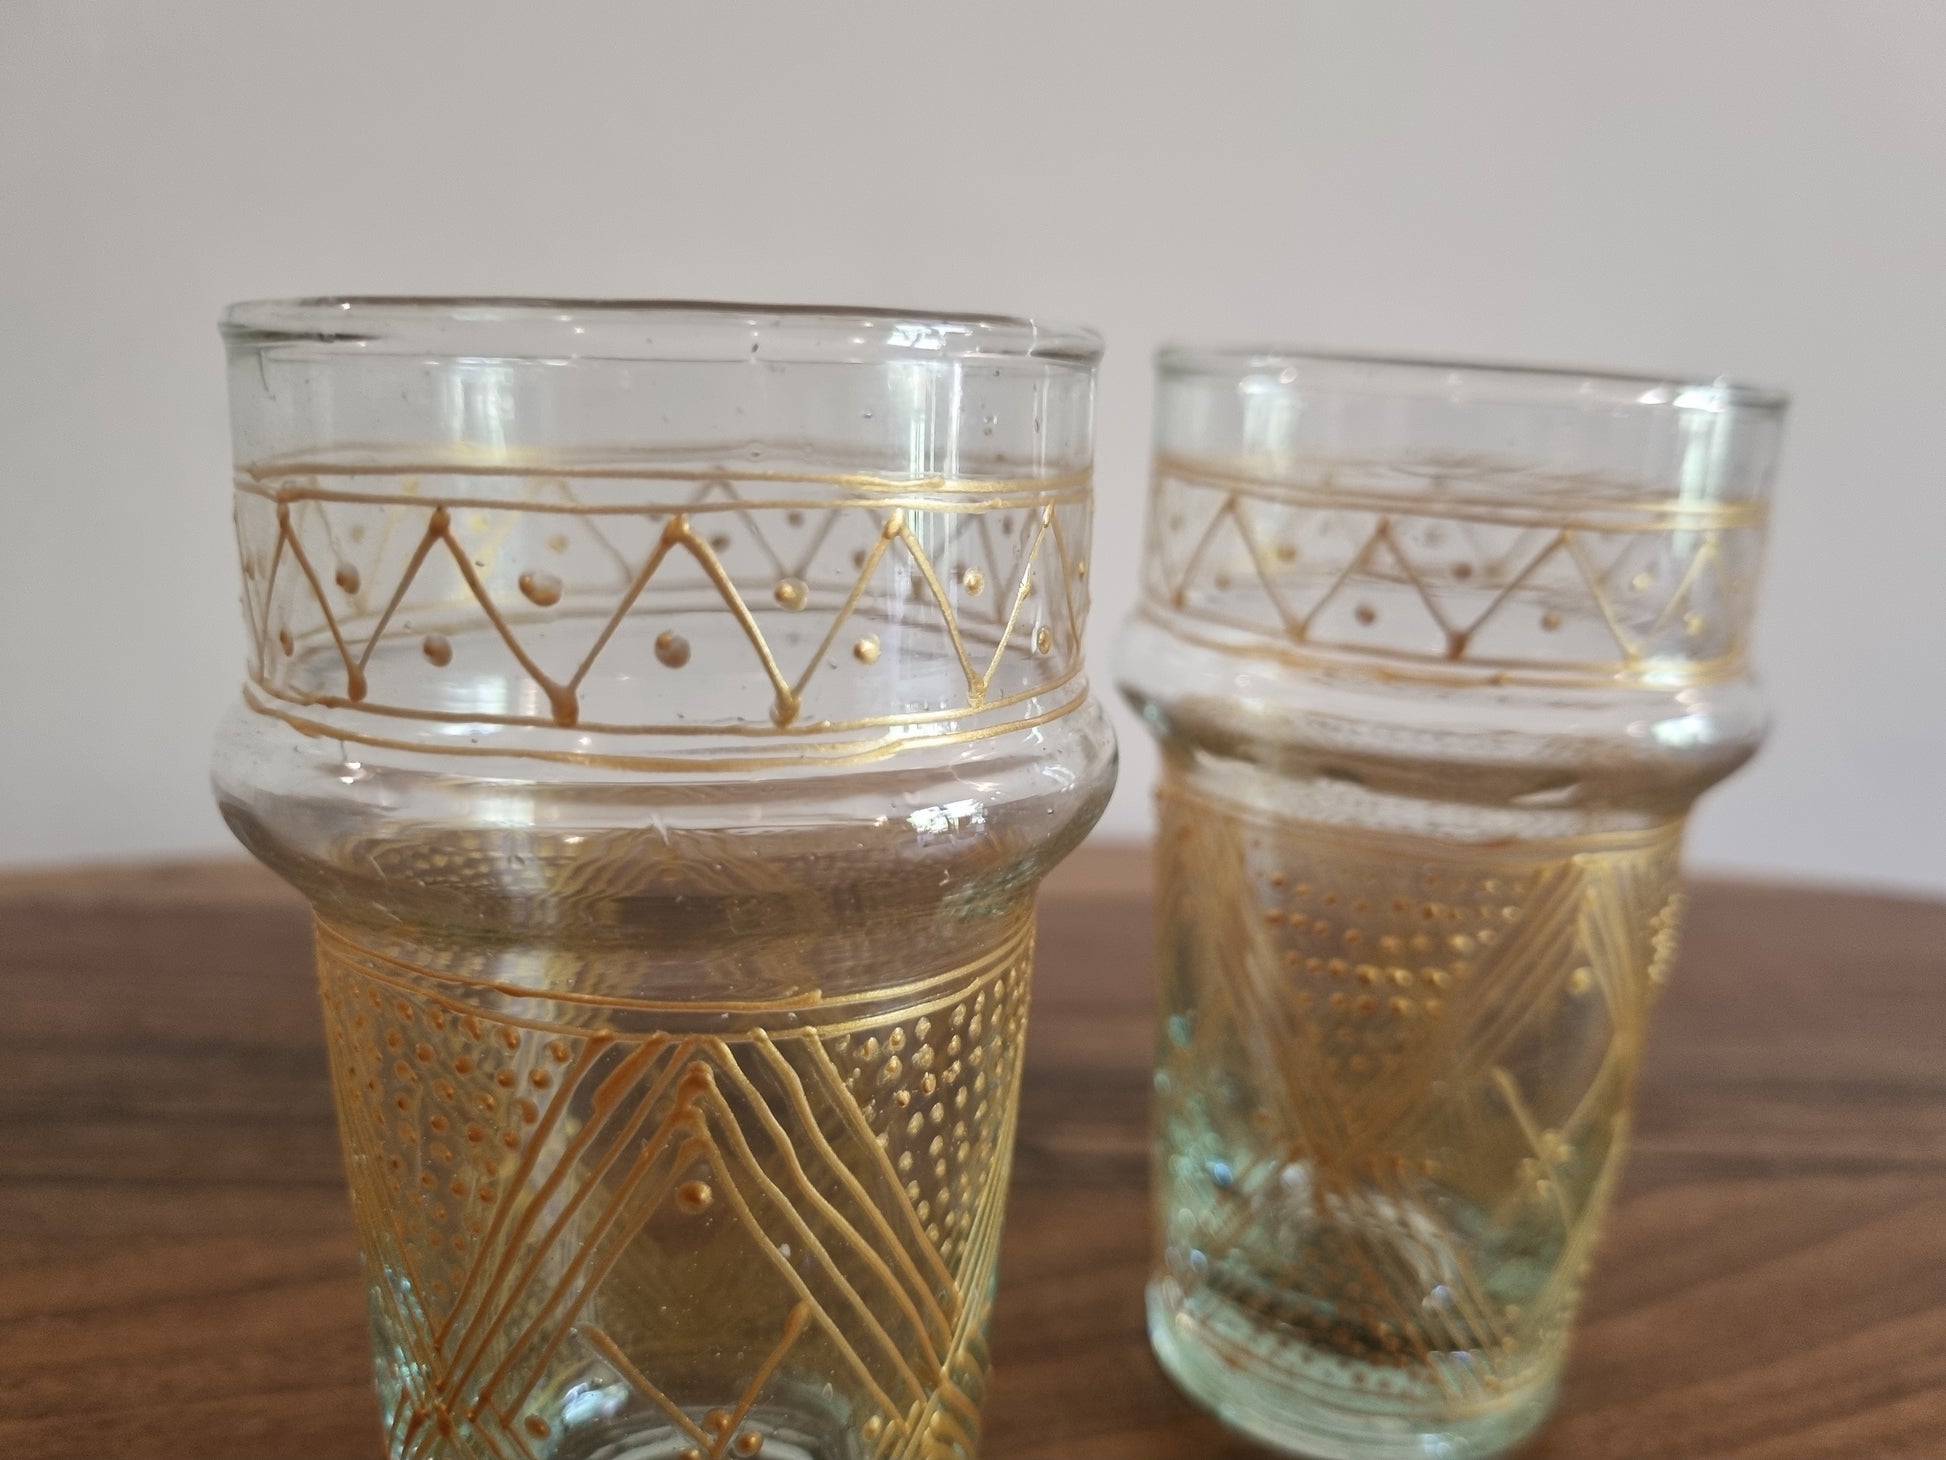 Six verres beldi marocains traditionnels, présentant un design unique et un savoir-faire artisanal.